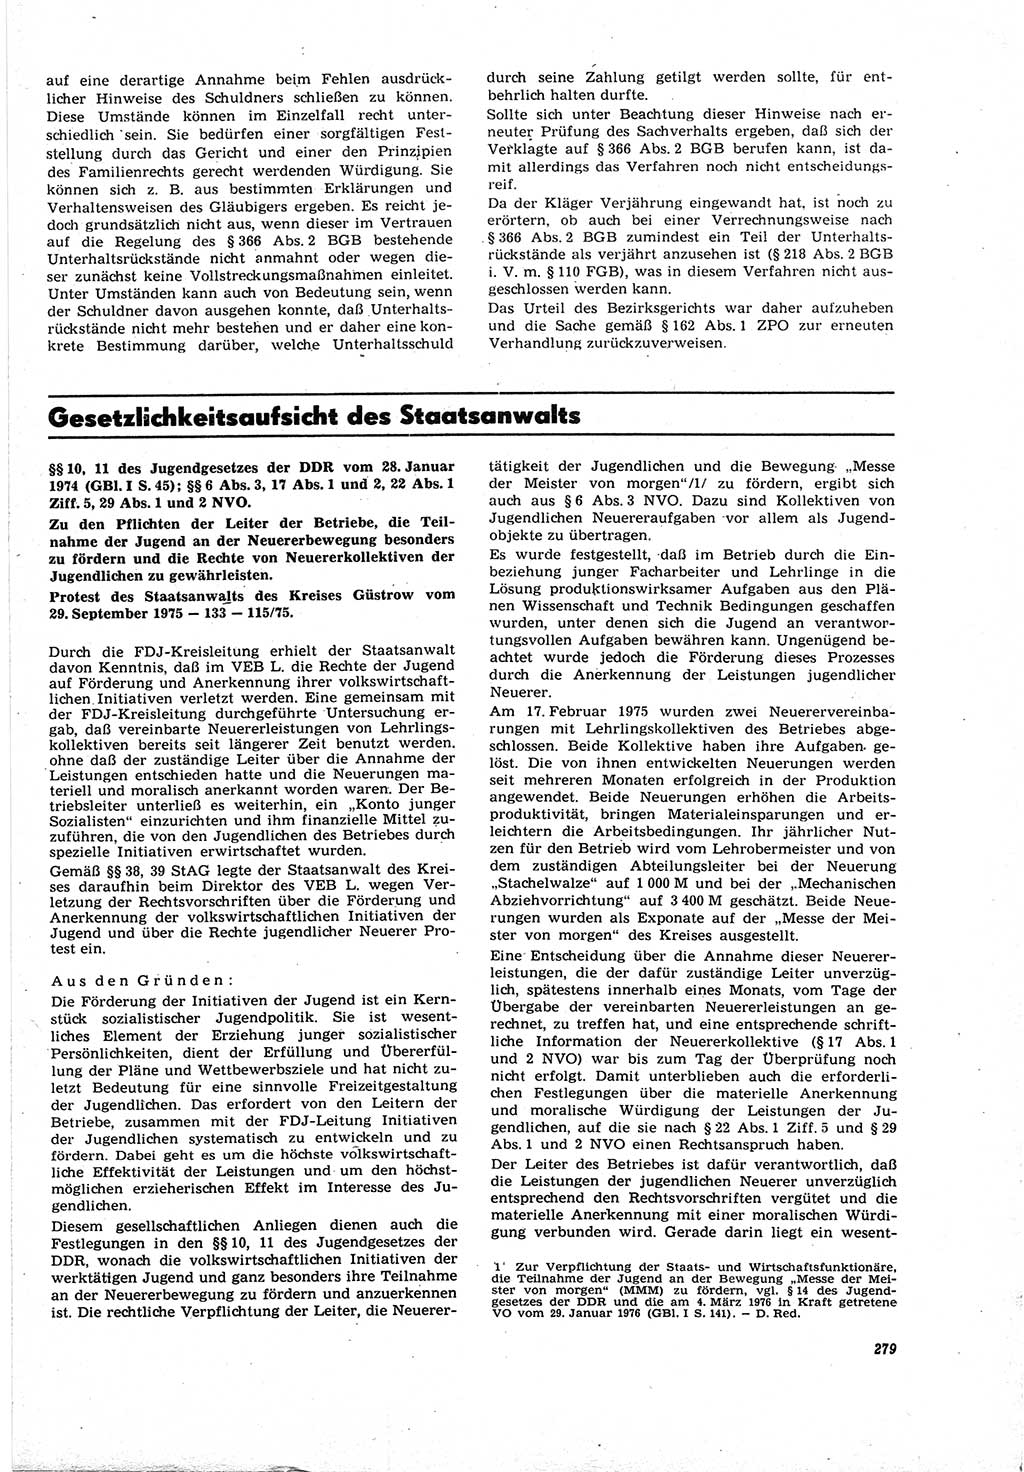 Neue Justiz (NJ), Zeitschrift für Recht und Rechtswissenschaft [Deutsche Demokratische Republik (DDR)], 30. Jahrgang 1976, Seite 279 (NJ DDR 1976, S. 279)